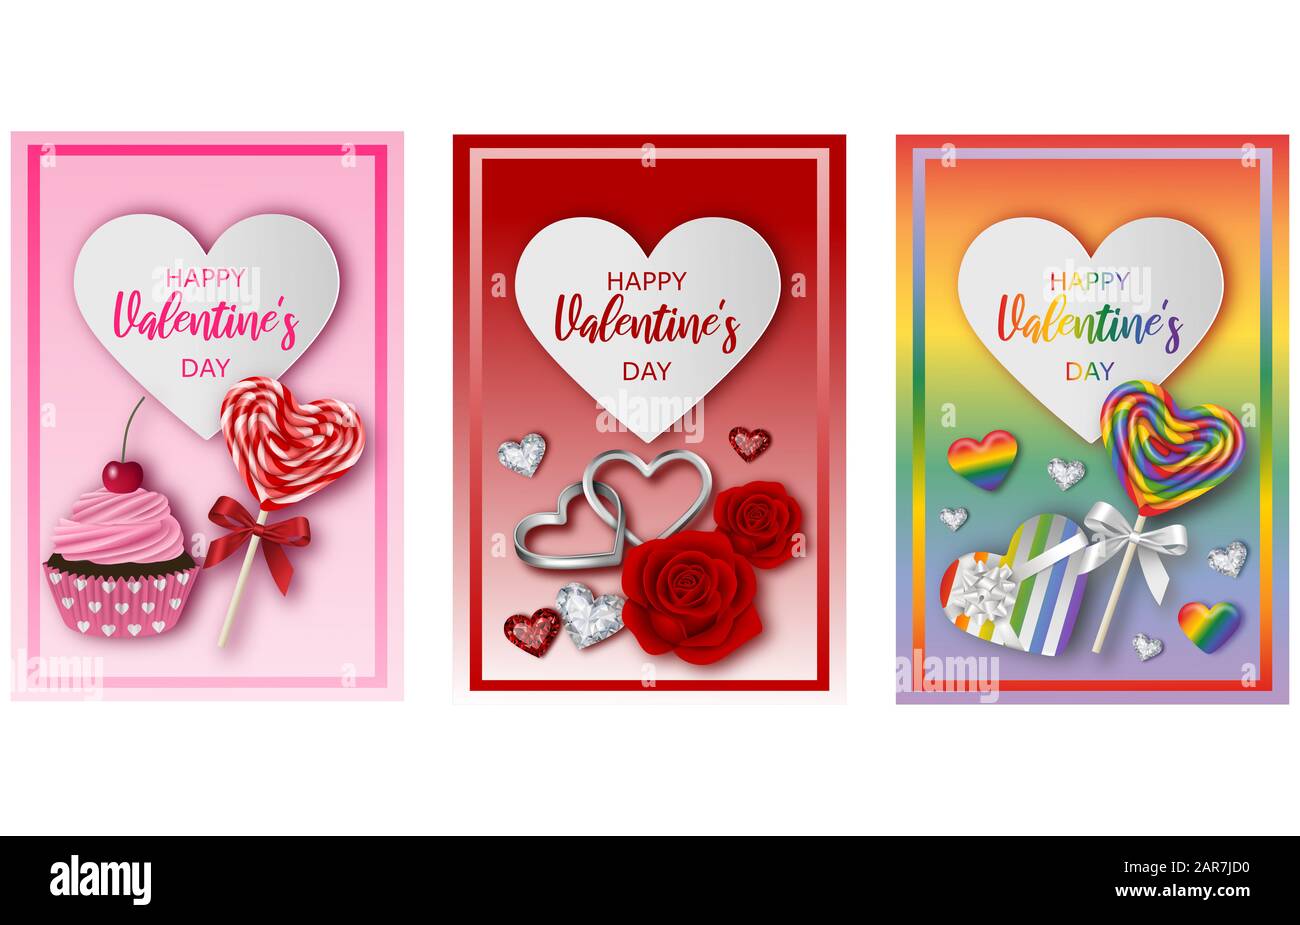 définissez les cartes de vœux ou les affiches de saint-valentin Banque D'Images